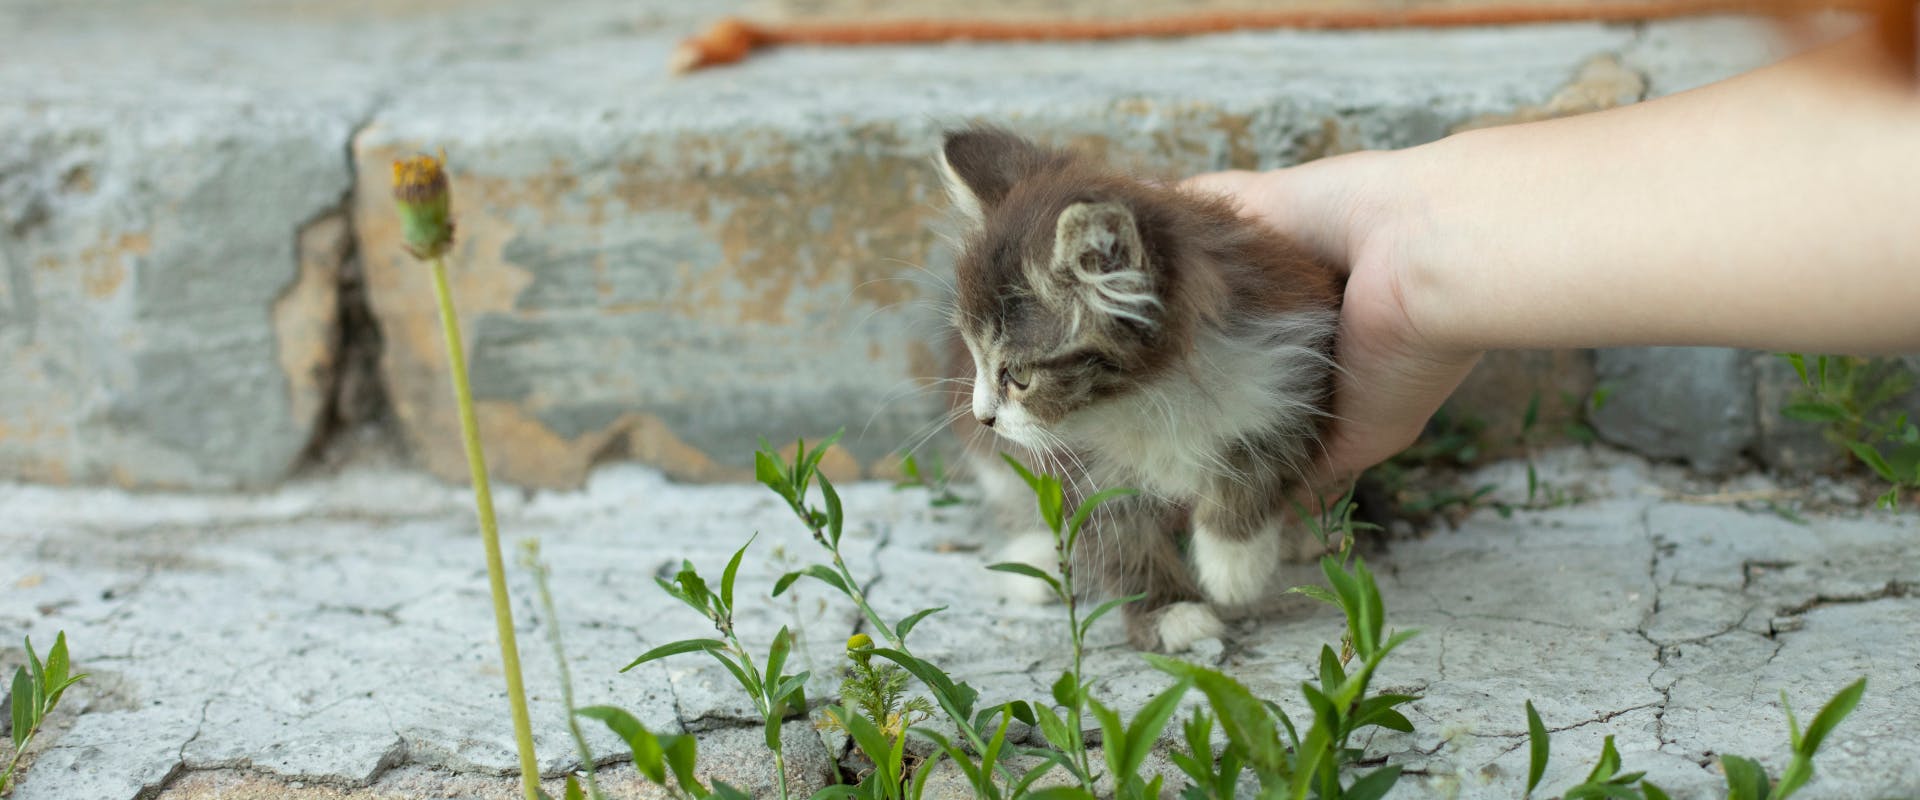 A kitten in a garden.